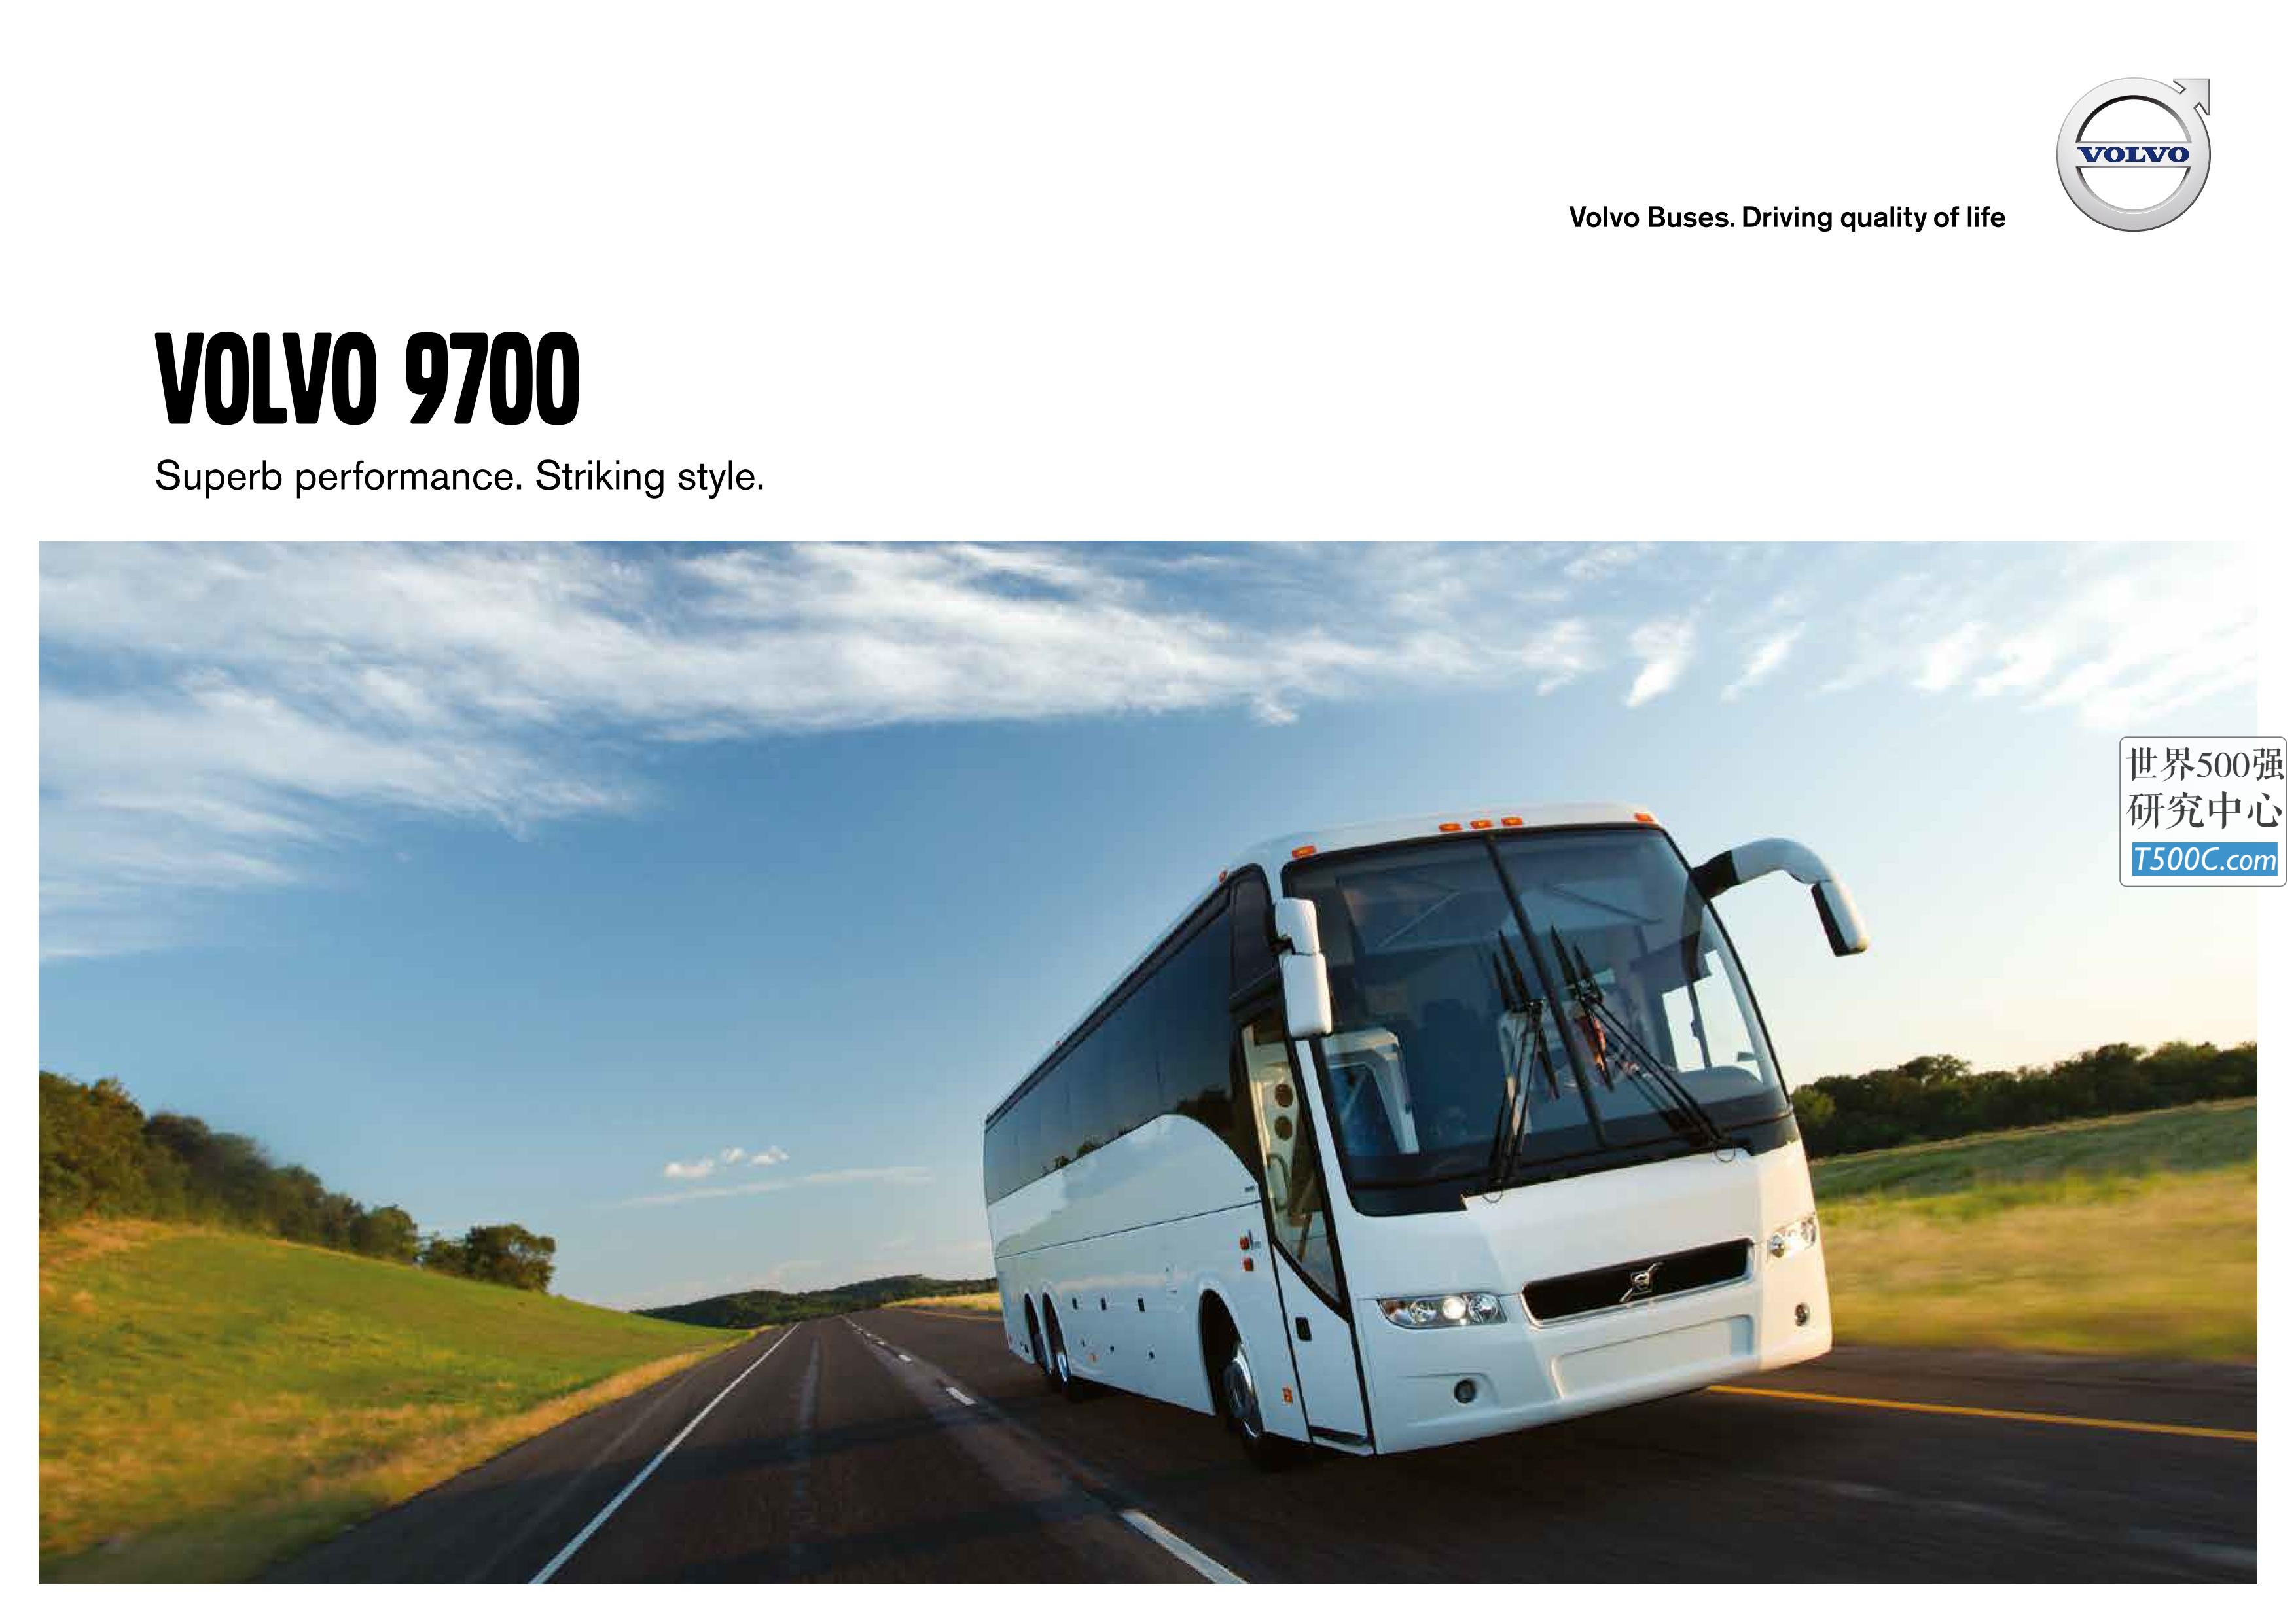 沃尔沃汽车Volvo_产品宣传册Brochure_T500C.com_9700-brochure.pdf